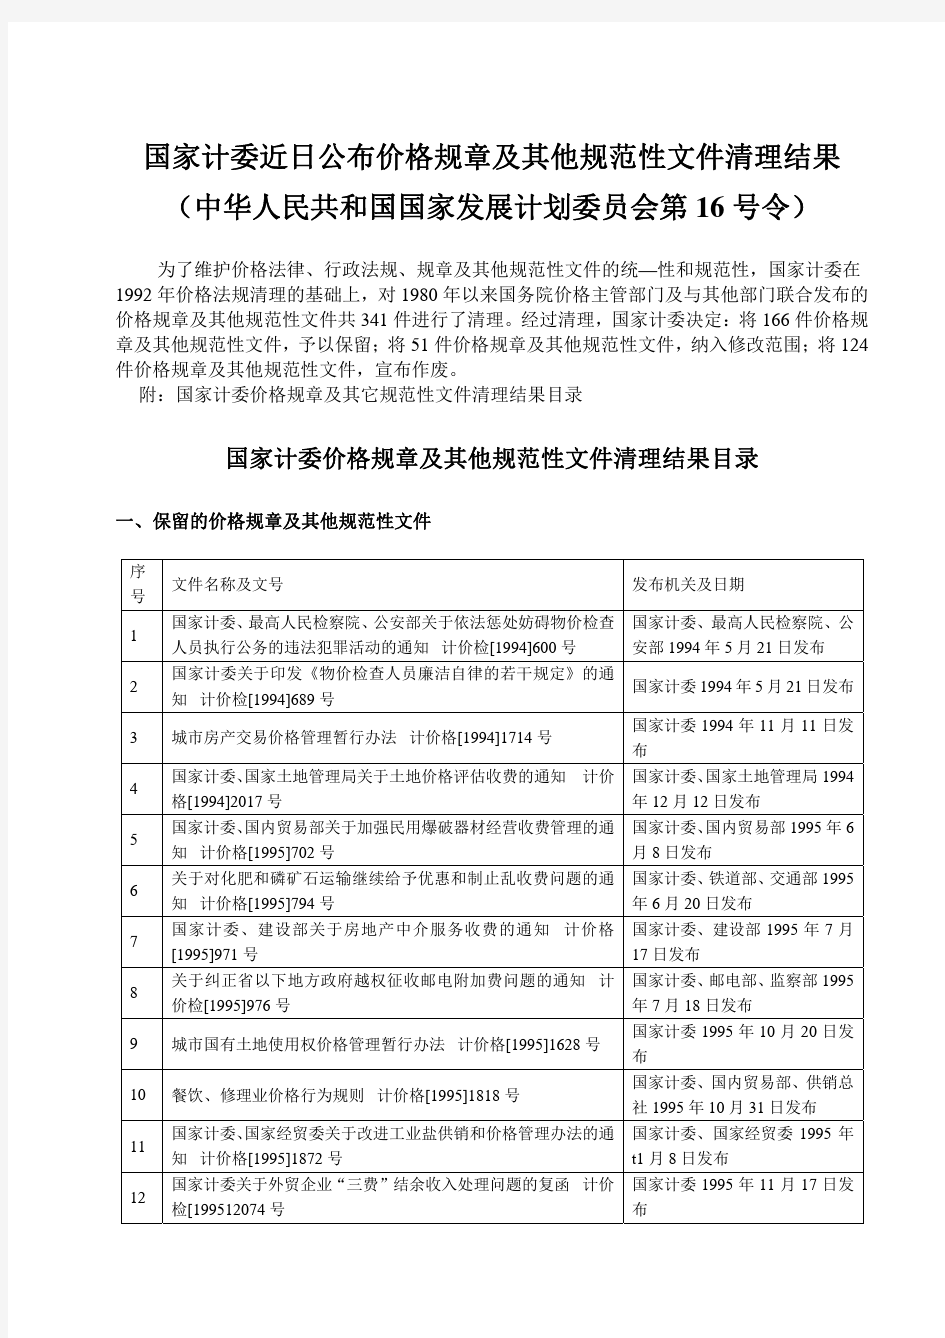 中华人民共和国国家发展计划委员会第16号令